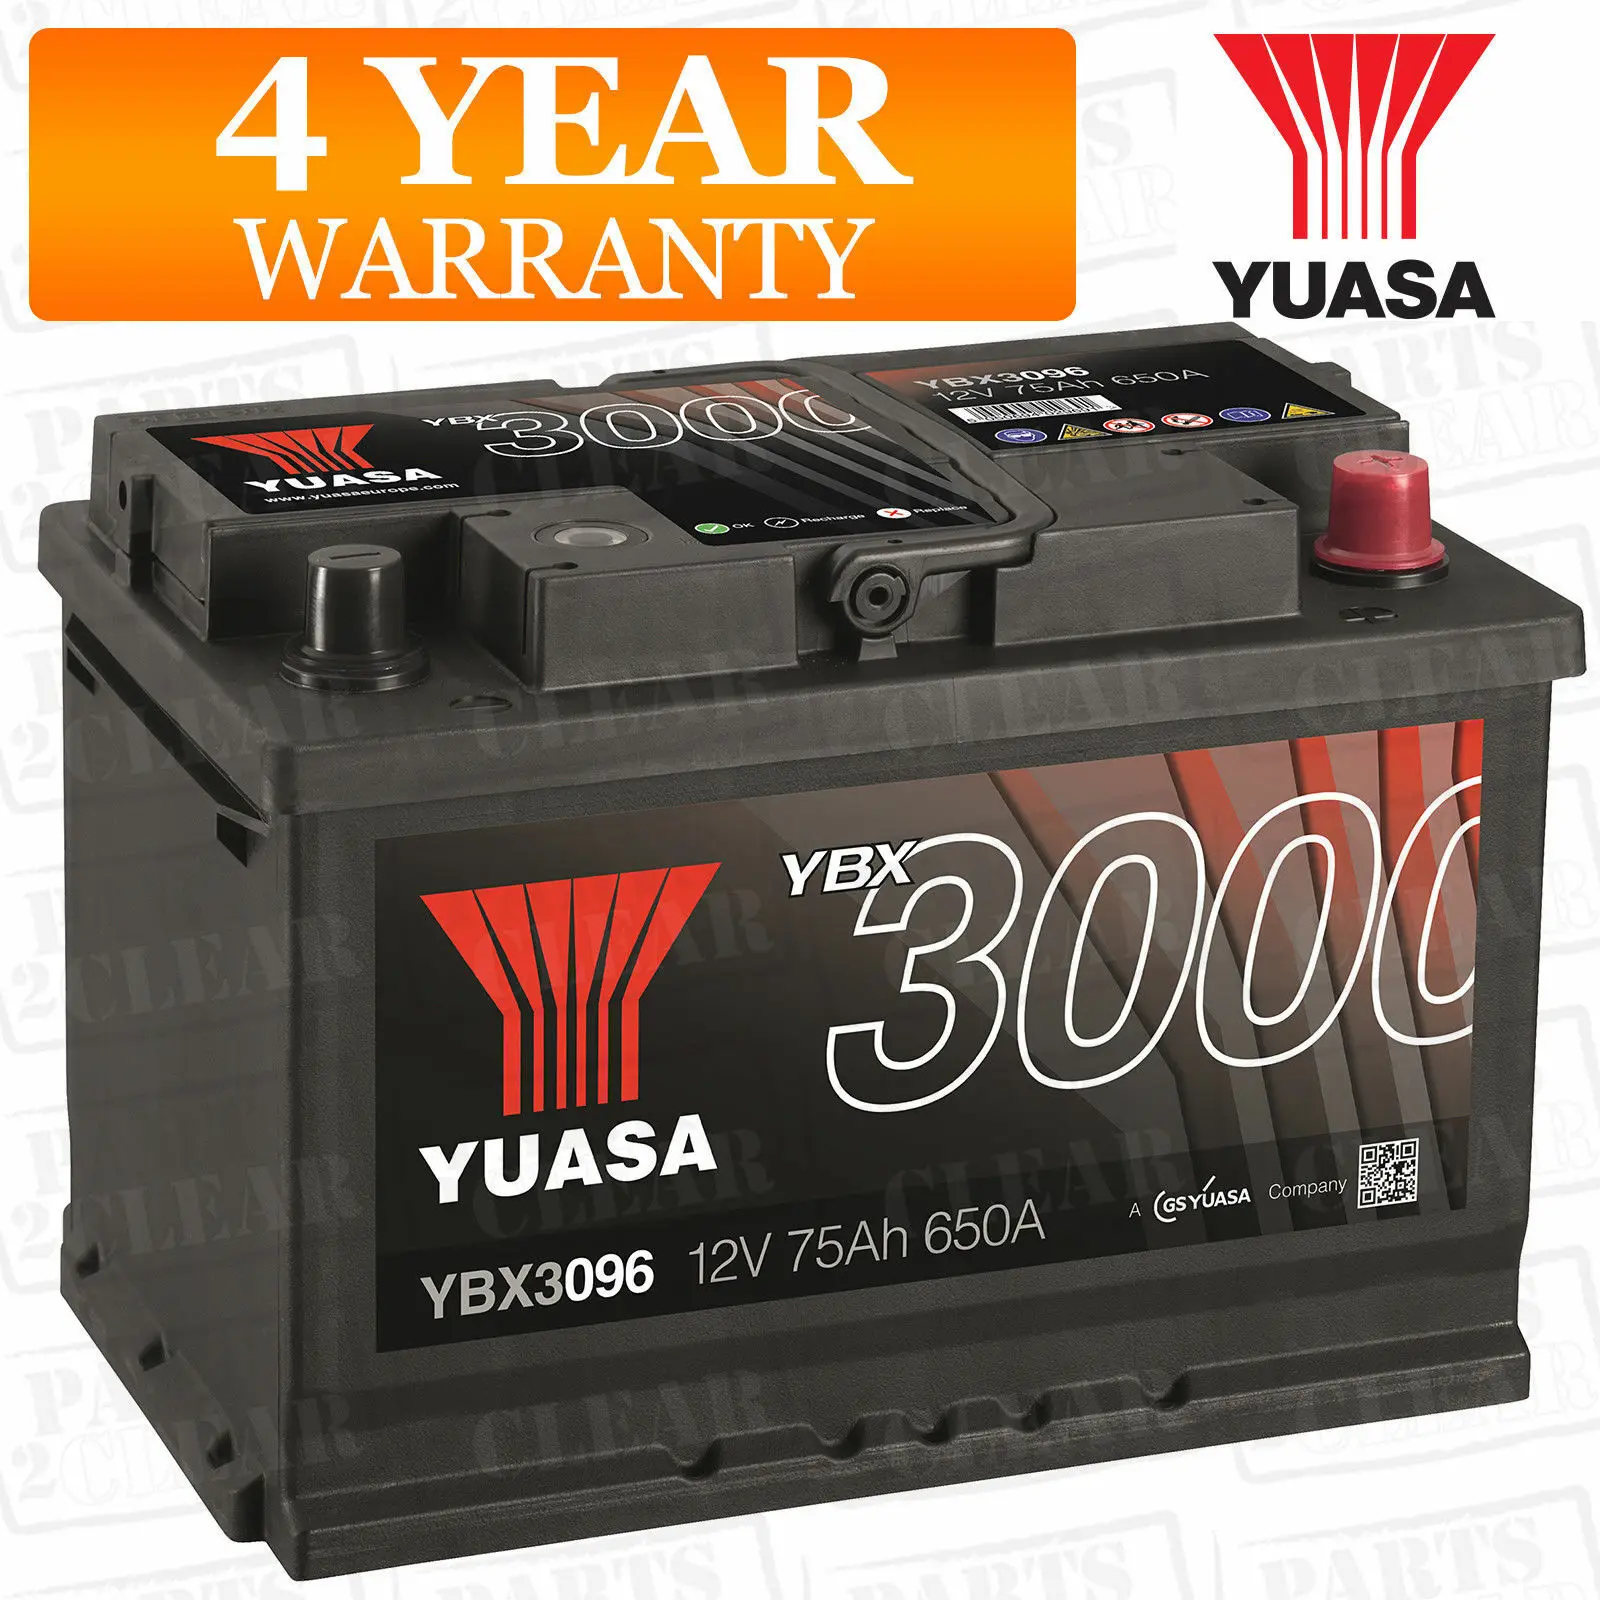 

Yuasa 12v 75Ah 650A Car Battery YBX3096 (HB096 / HCB096)